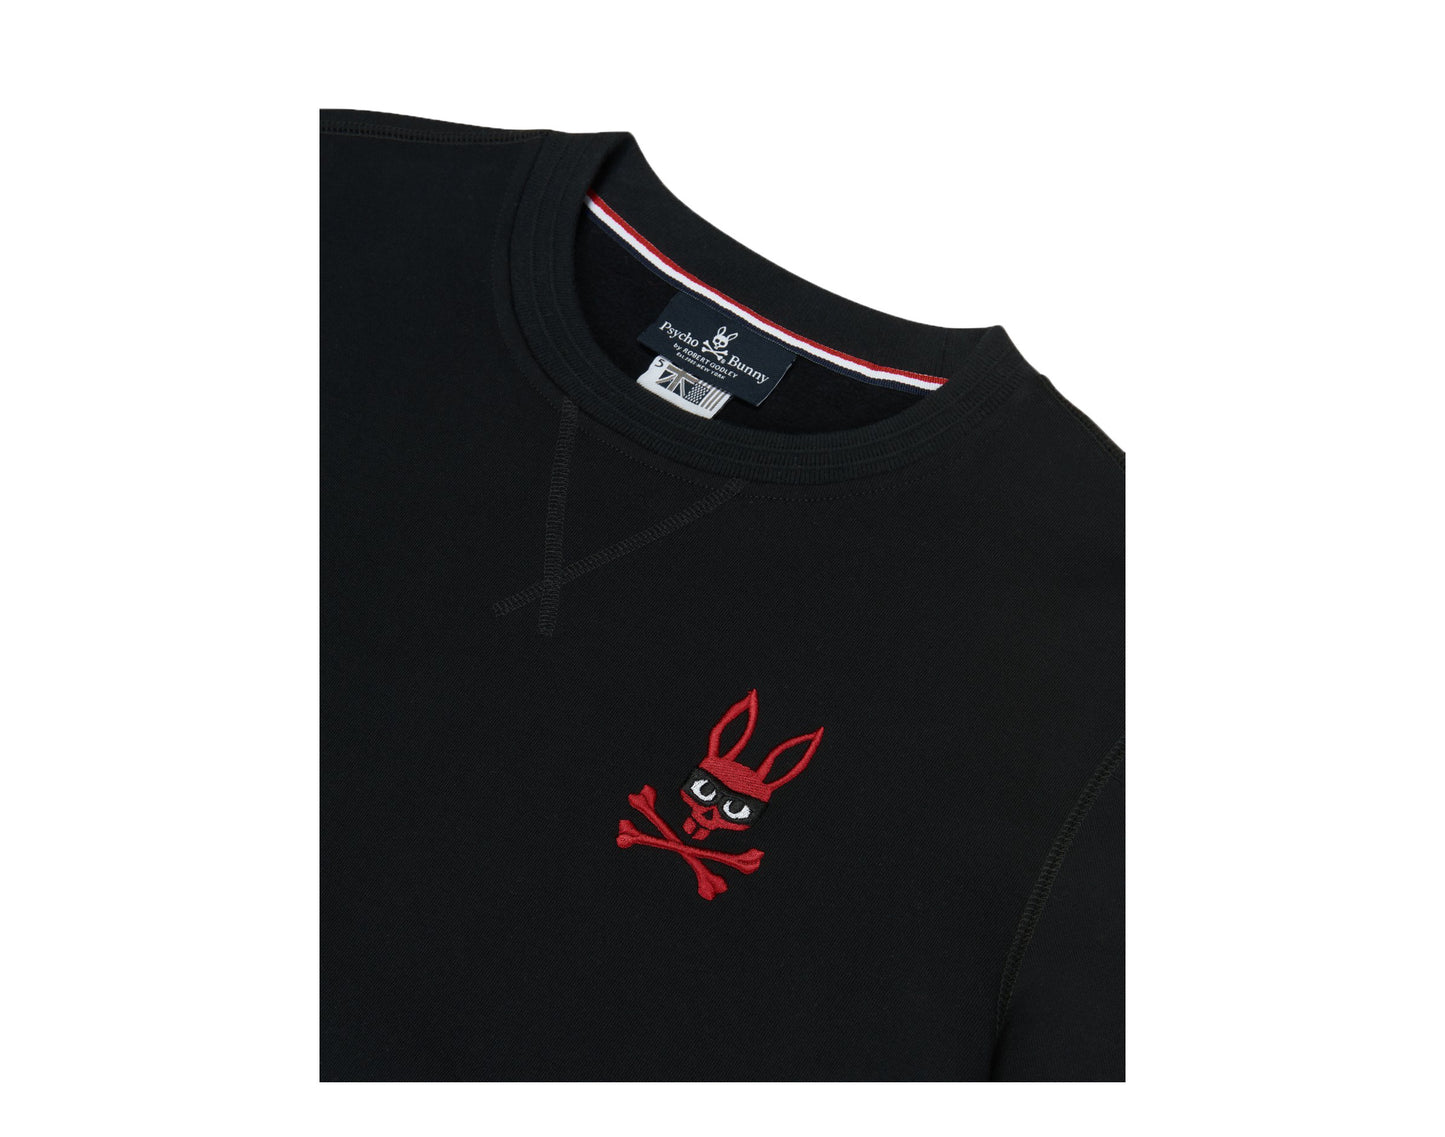 Psycho Bunny Rawson Mischief Zorro Bunny Black Men's Sweatshirt B6S482G1FL-BLK